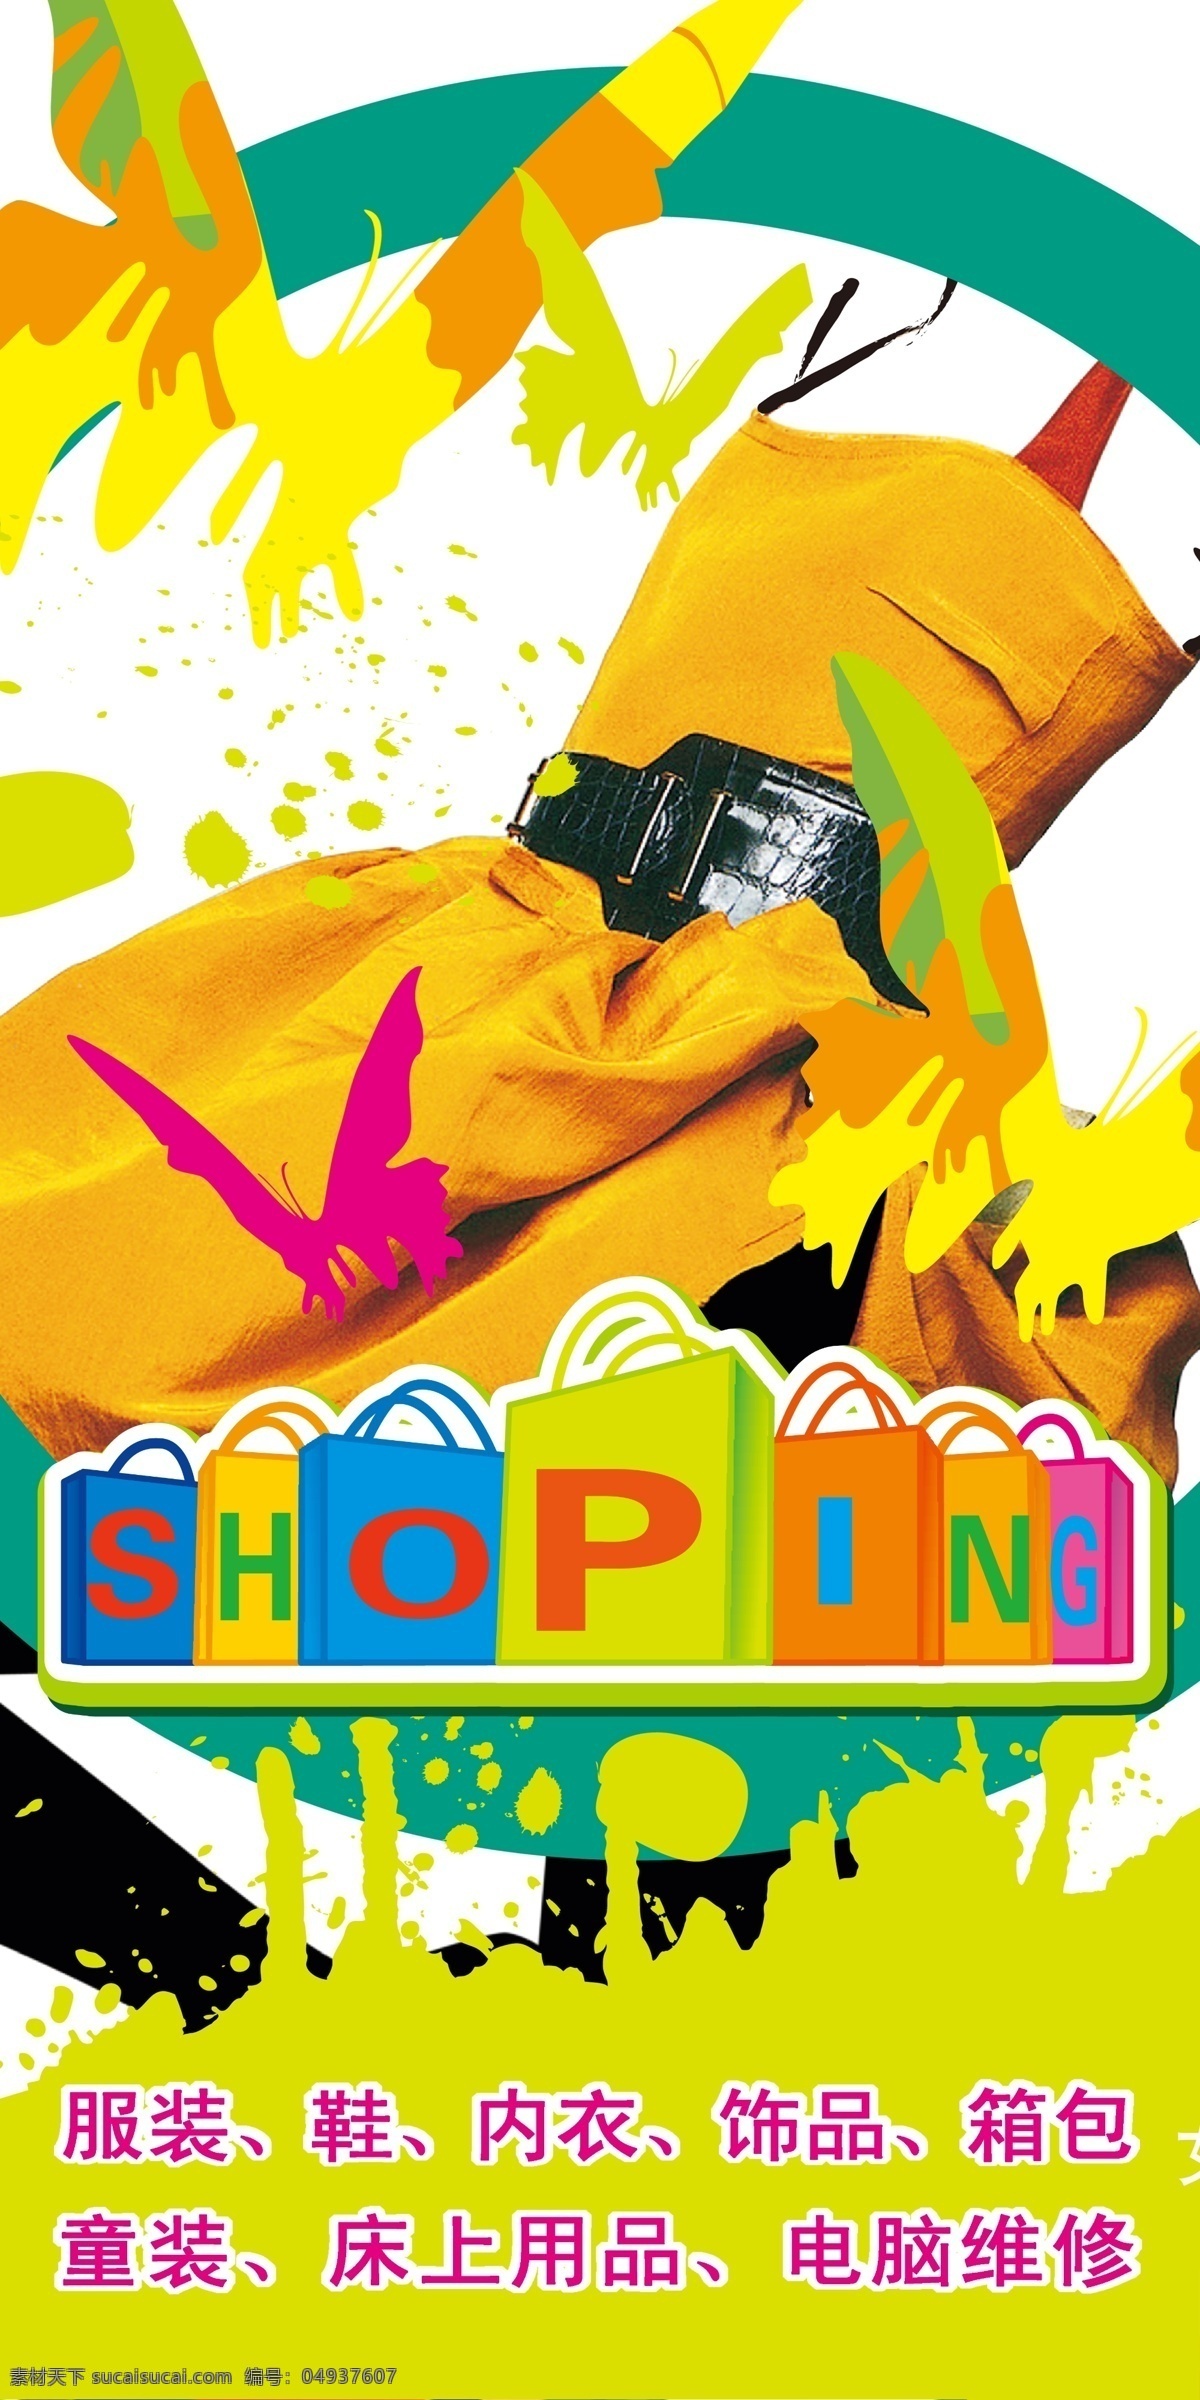 商场 宣传 购物 广告 威 韩 商城 服装 小商品 批发市场 shoping 时尚购物 美女 广告设计模板 源文件